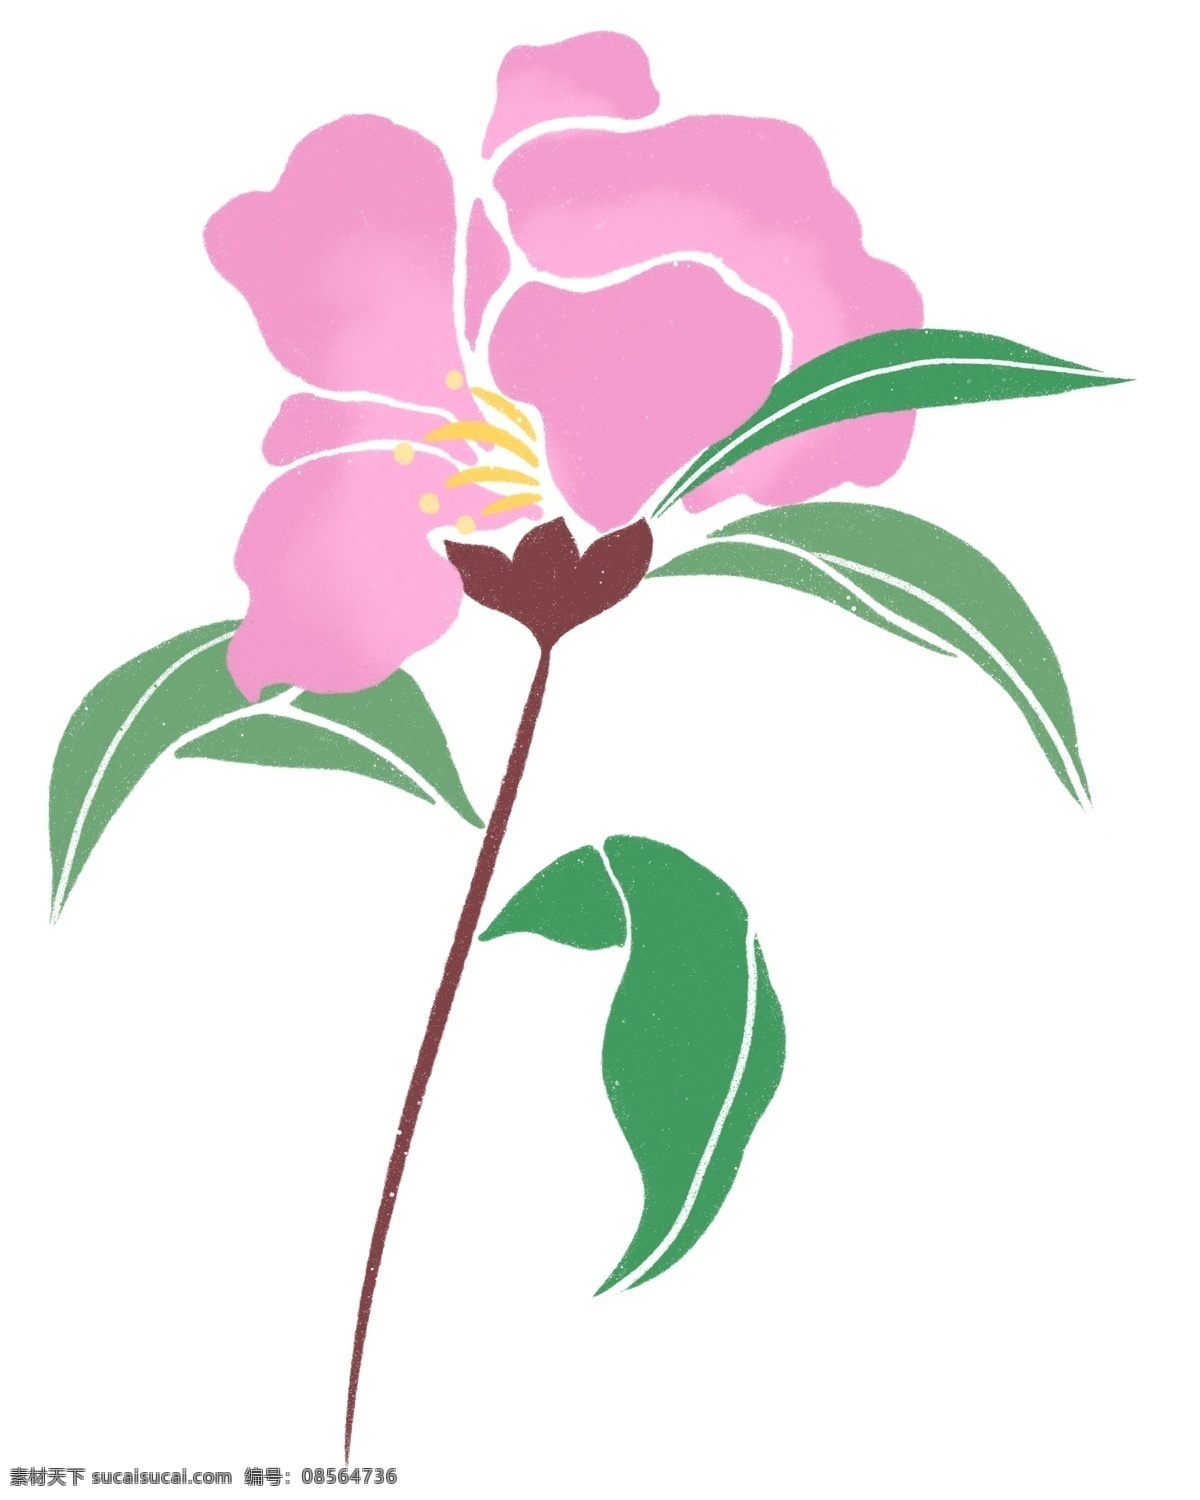 粉色 春天 花枝 插画 唯美 花朵 卡通植物插画 粉色花朵 花卉 创意植物 绿色的叶子 春天花枝插画